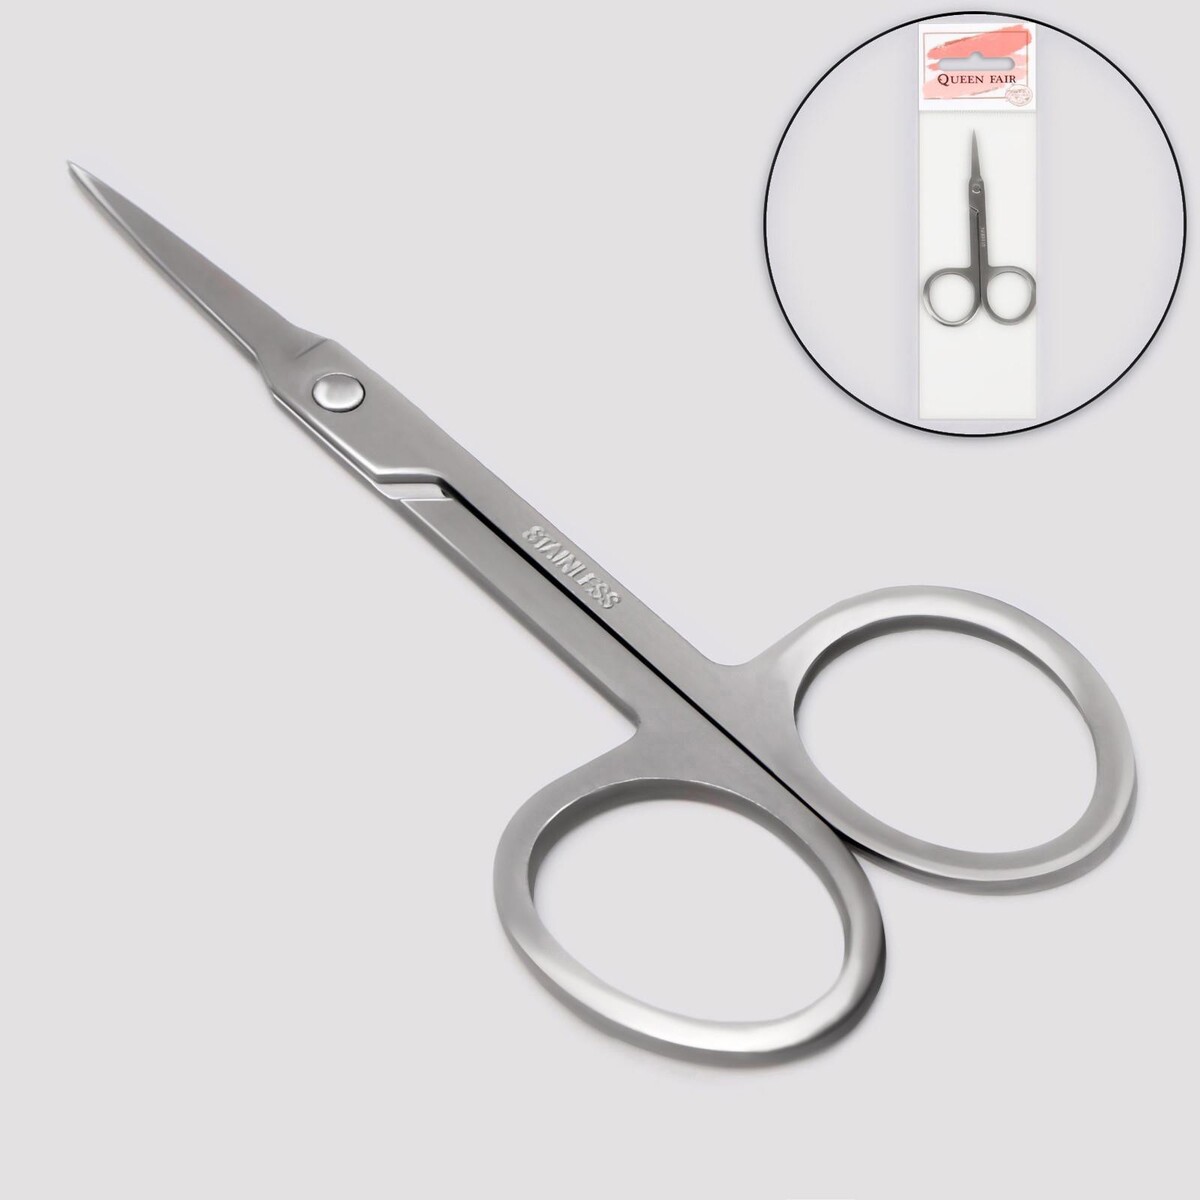 Ножницы маникюрные, для кутикулы, прямые, узкие, 9 см, цвет серебристый ножницы безопасные прямые 9 см серебристый